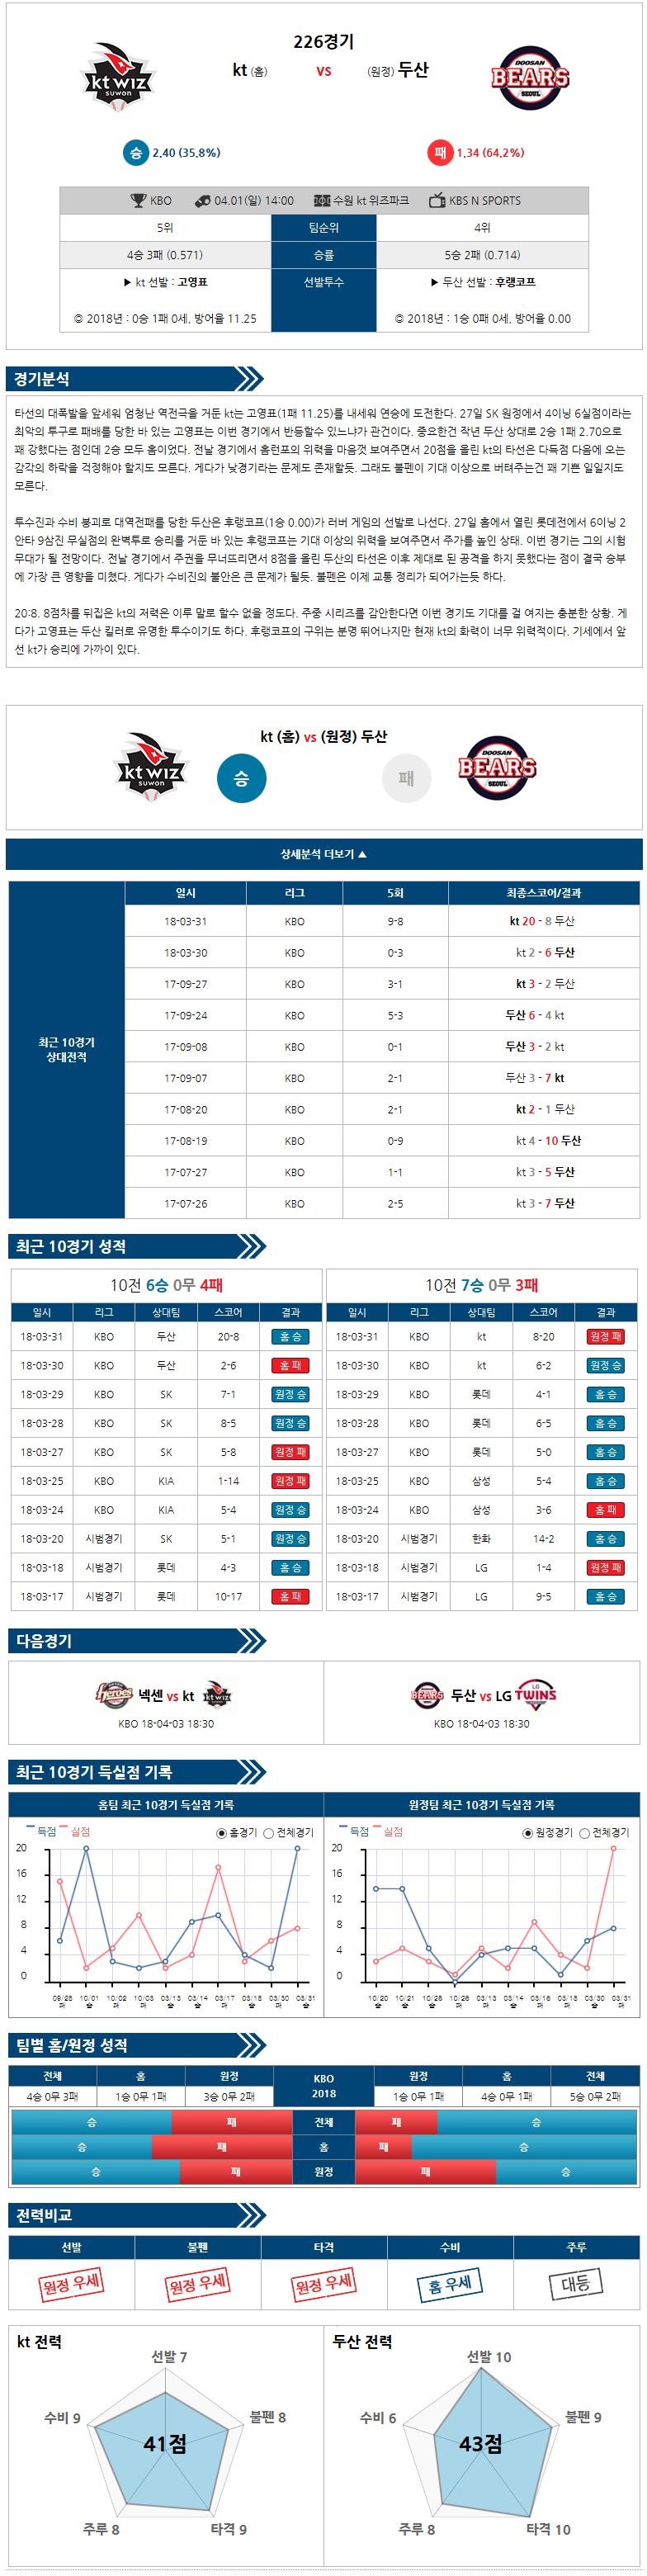 04-01 [KBO] 14:00 KT vs 두산